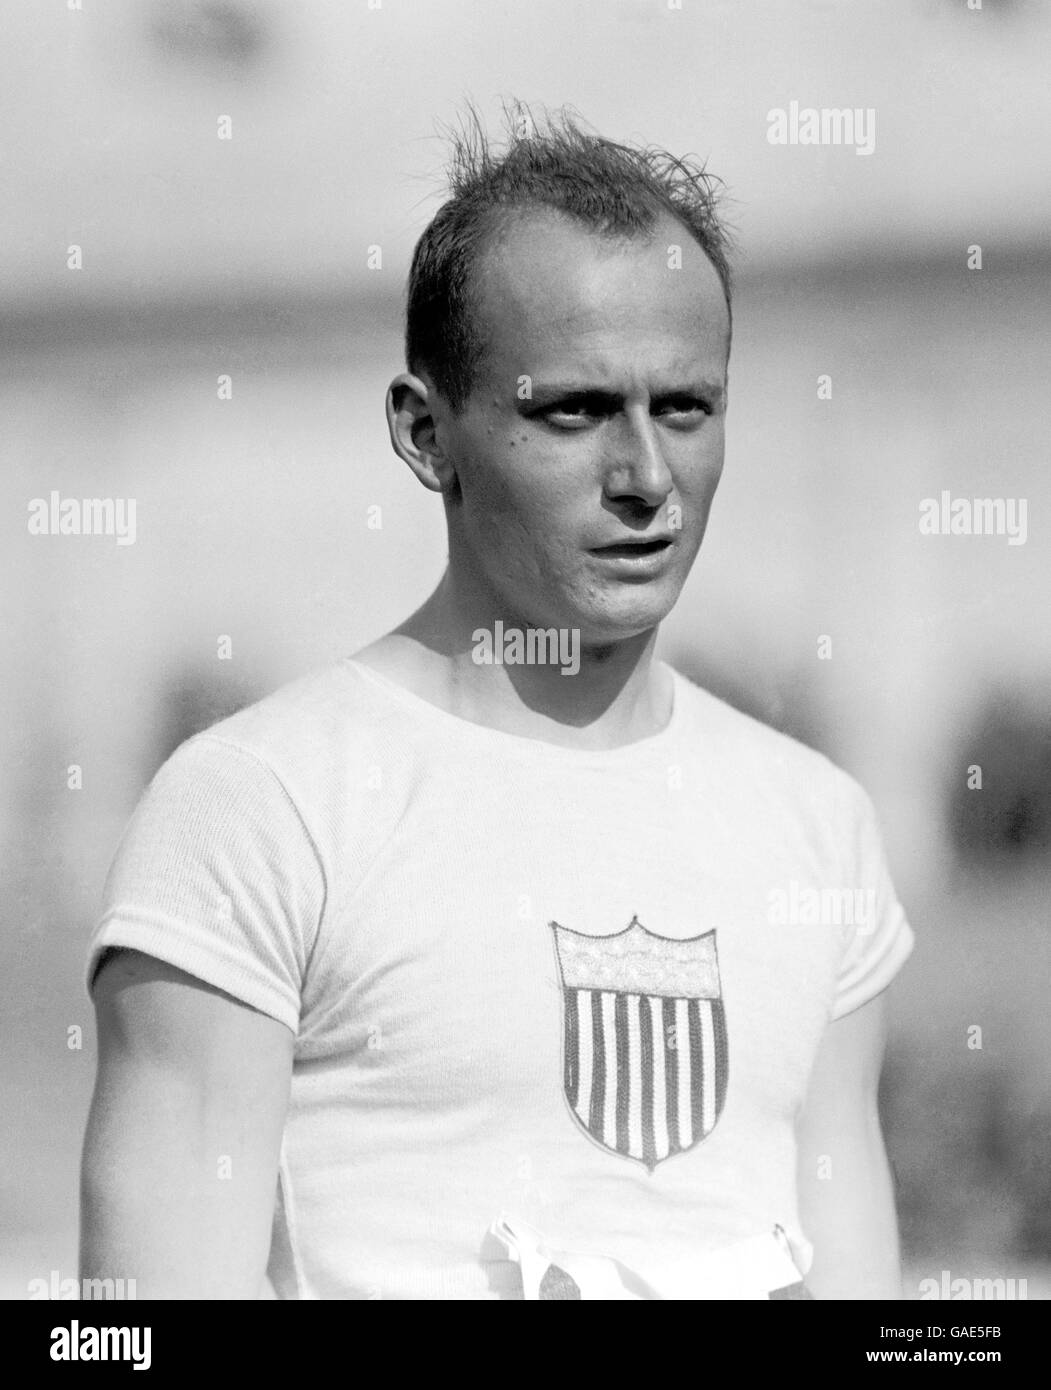 Giochi Olimpici di Anversa 1920 - Atletica - 200 metri. Allen Woodring degli Stati Uniti, vincitore dei 200 metri. Foto Stock